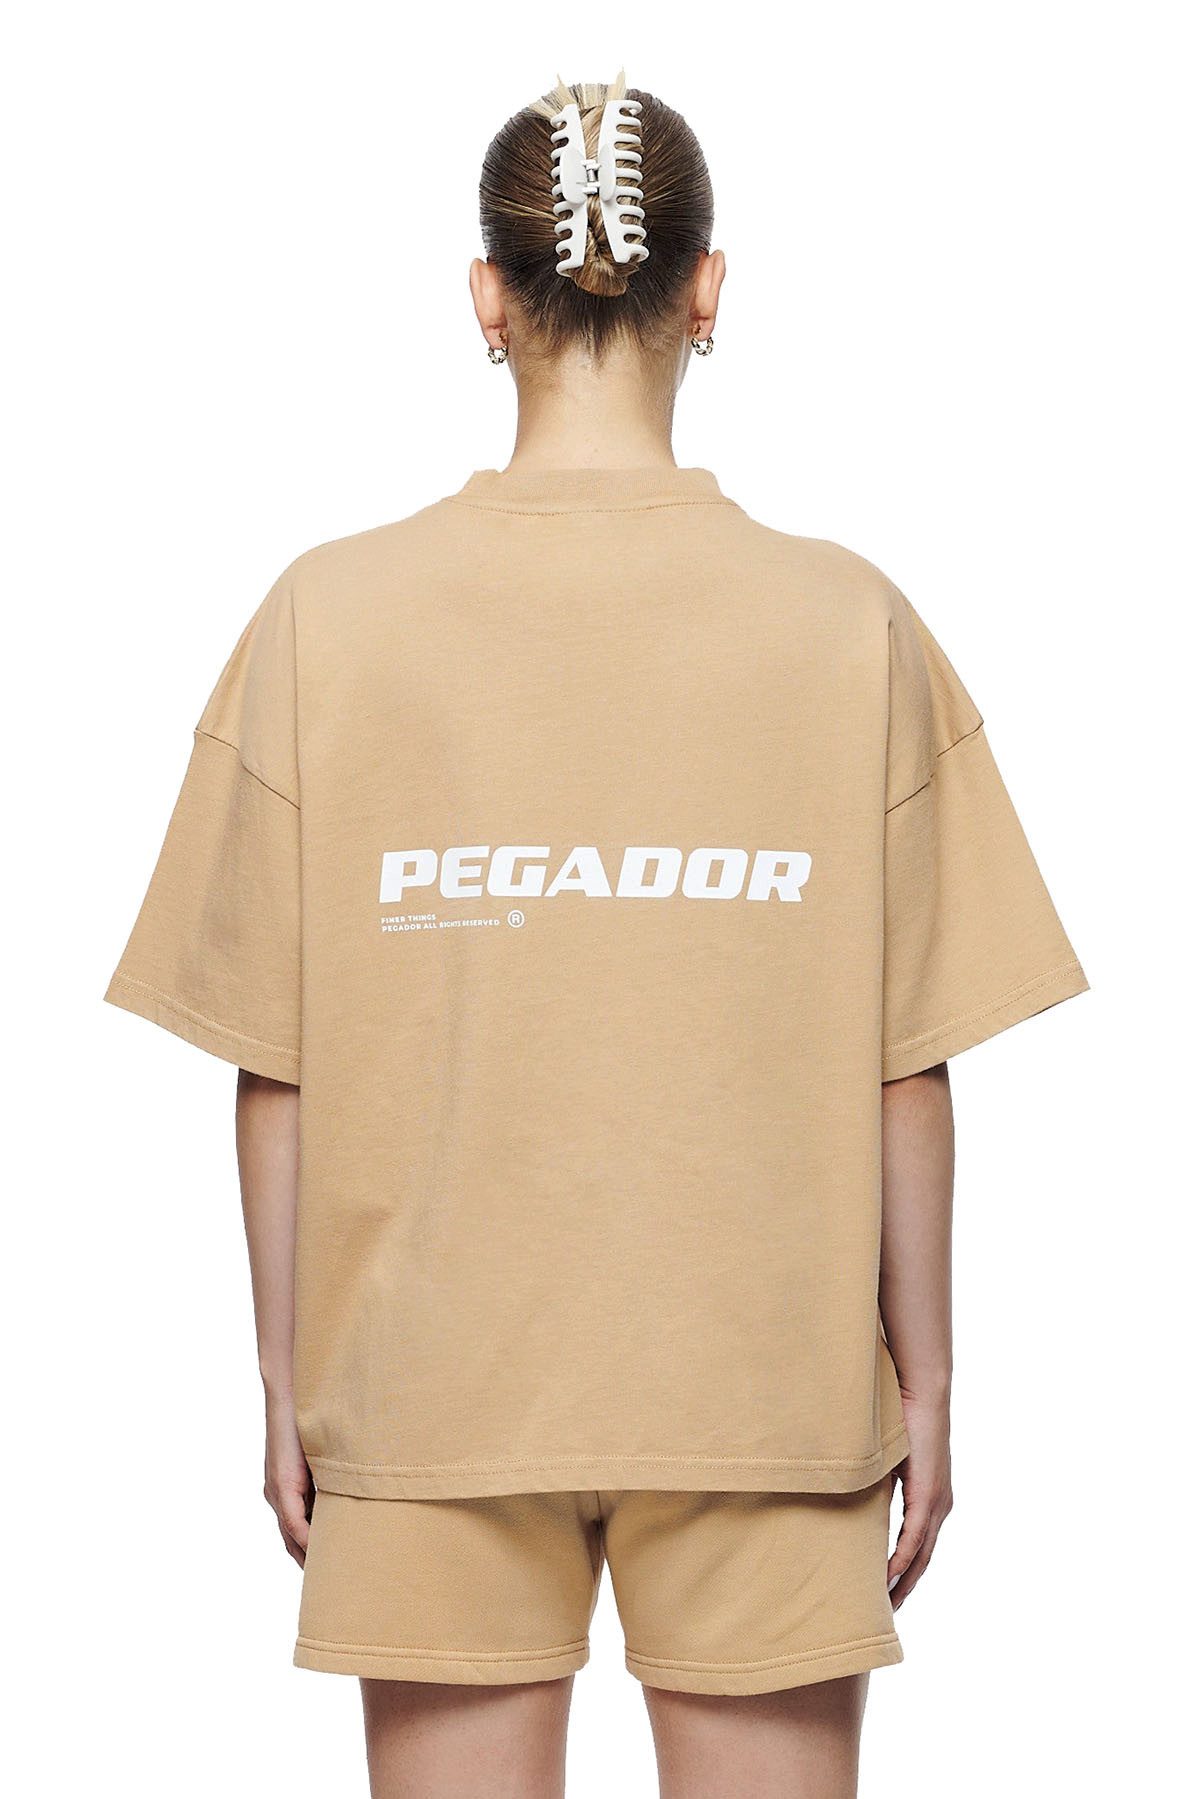 Pegador T-Shirt Culla Logo Heavy Oversized